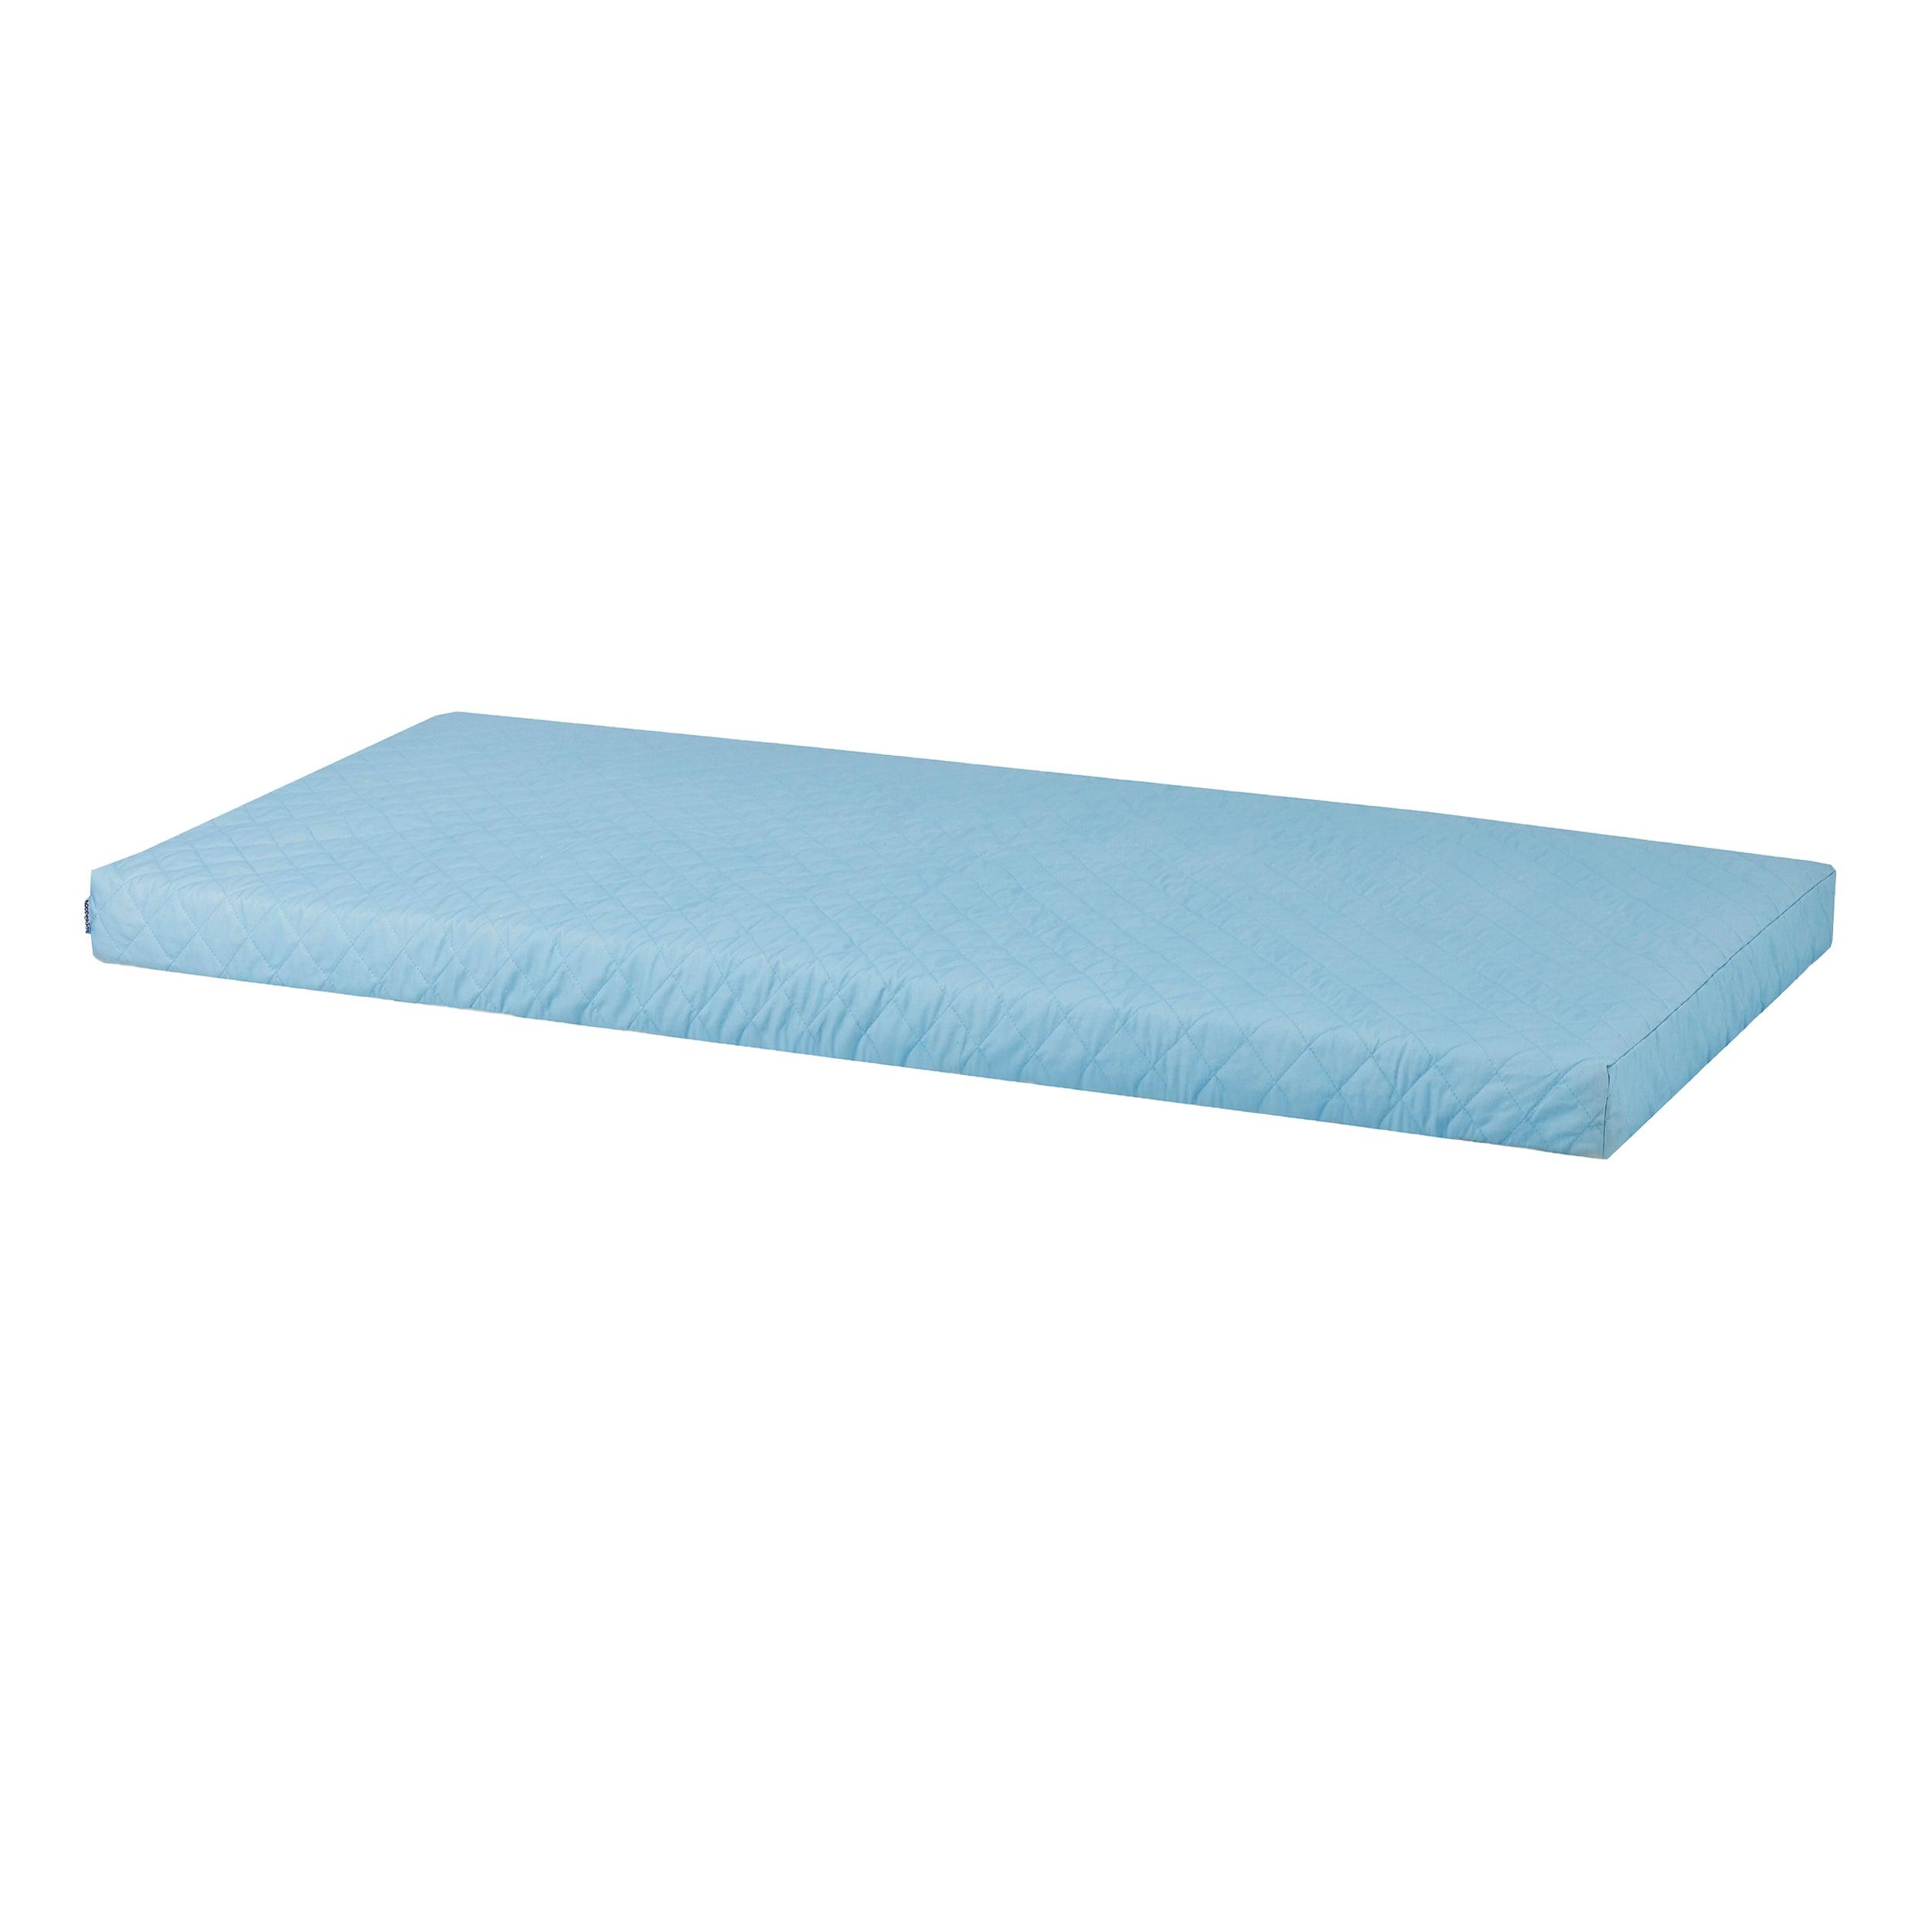 Hoppekids foam mattress including quilted cover